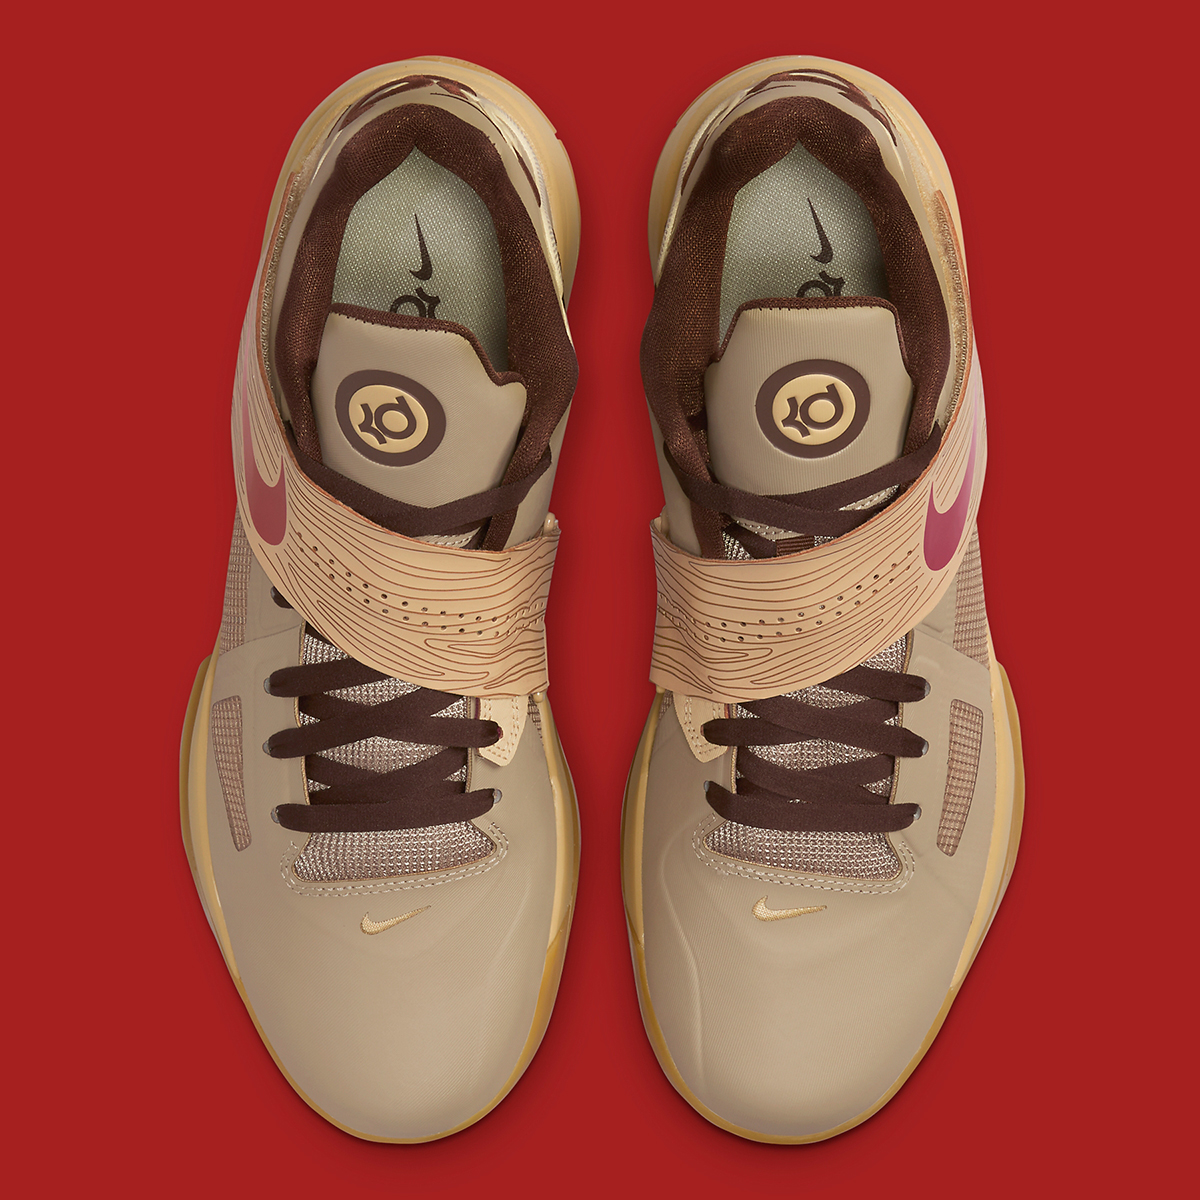 Kd 4 Brand Nike Drops The Blazer Mid in Digital Pink Fj4189 200 10